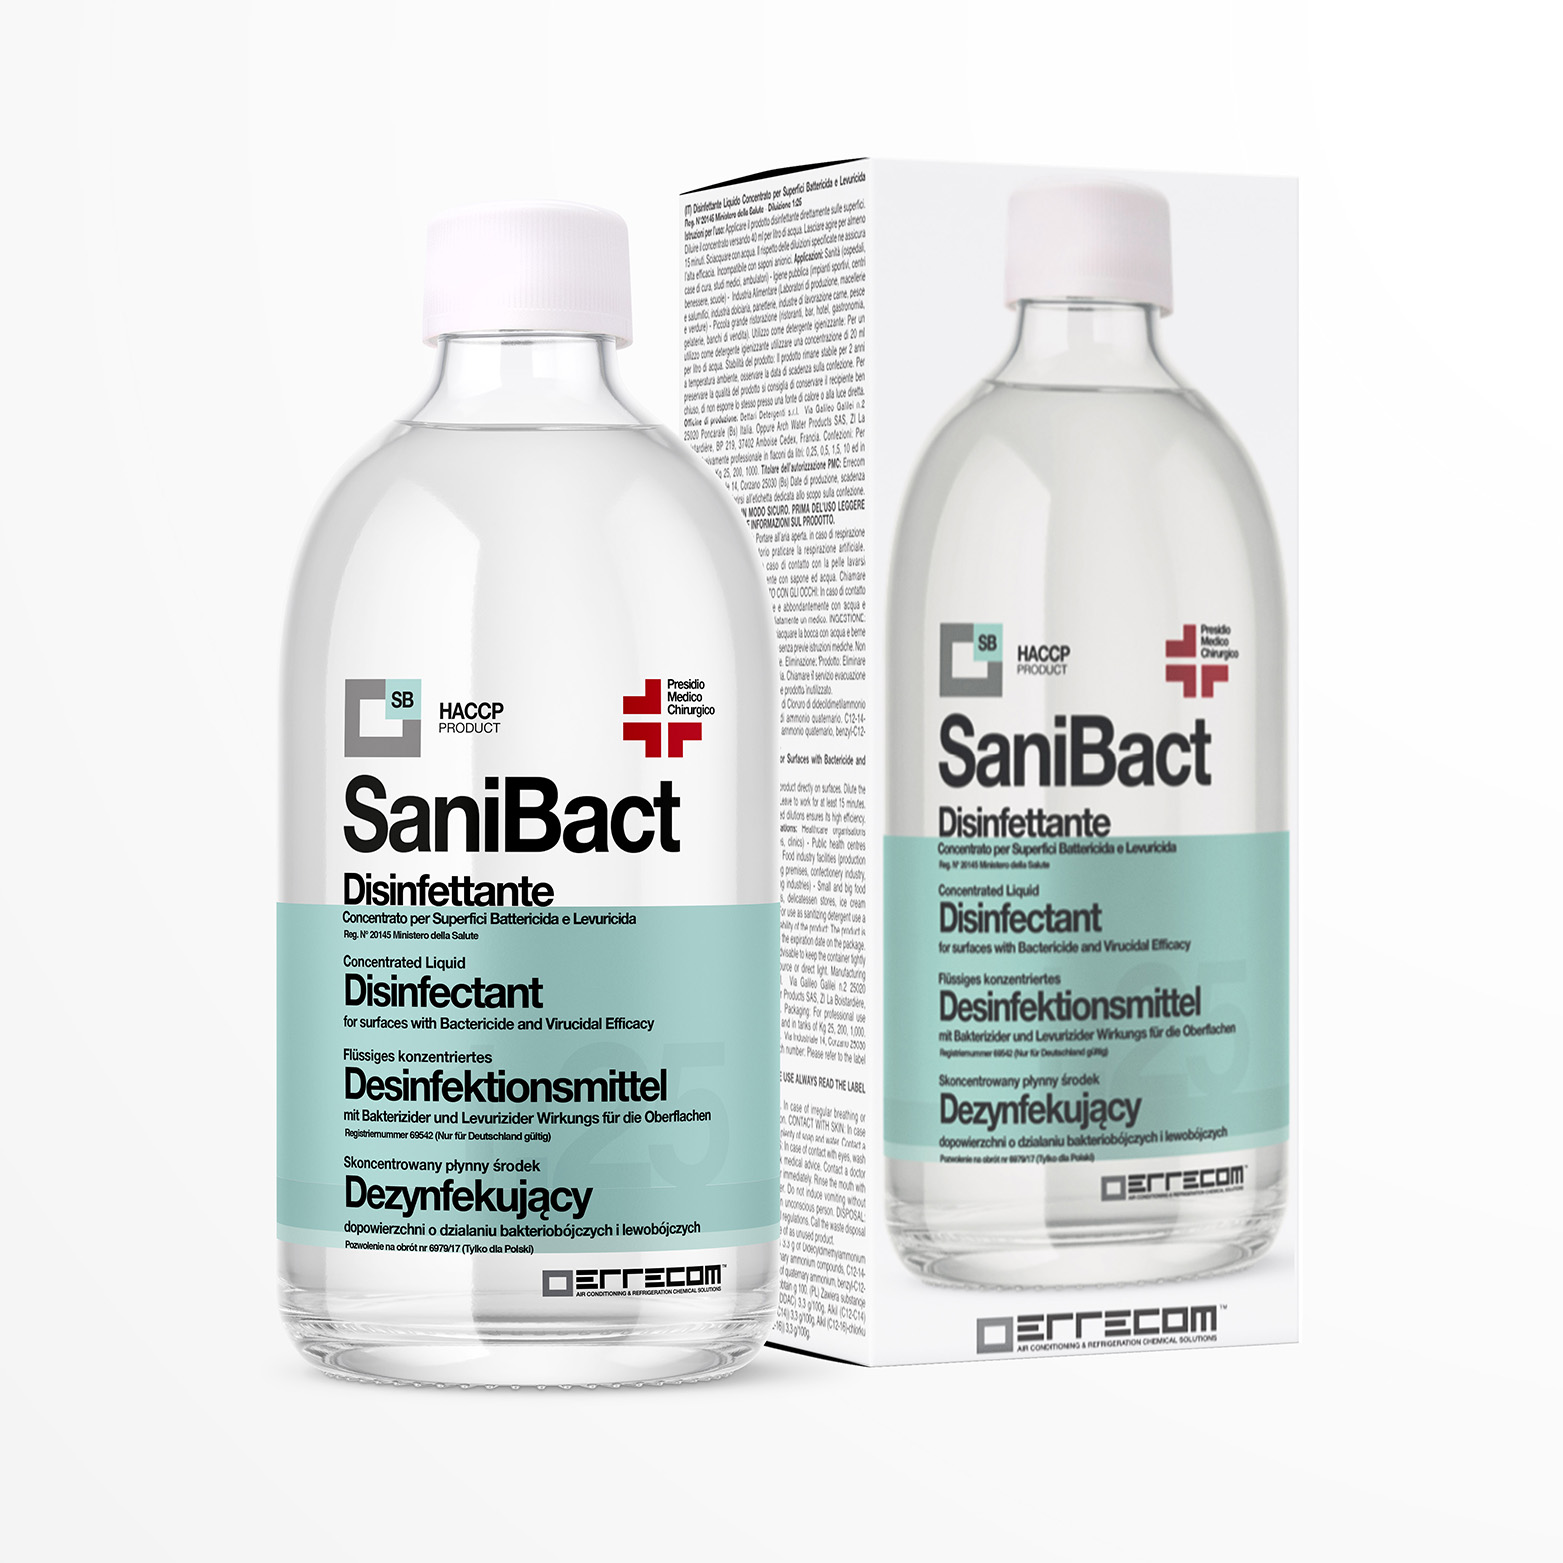 SANIBACT Disinfettante liquido per Superfici, Battericida, Levuricida e Virucida (Presidio Medico Chirurgico) - Flacone 500 ml - Confezione n° 12 pz.